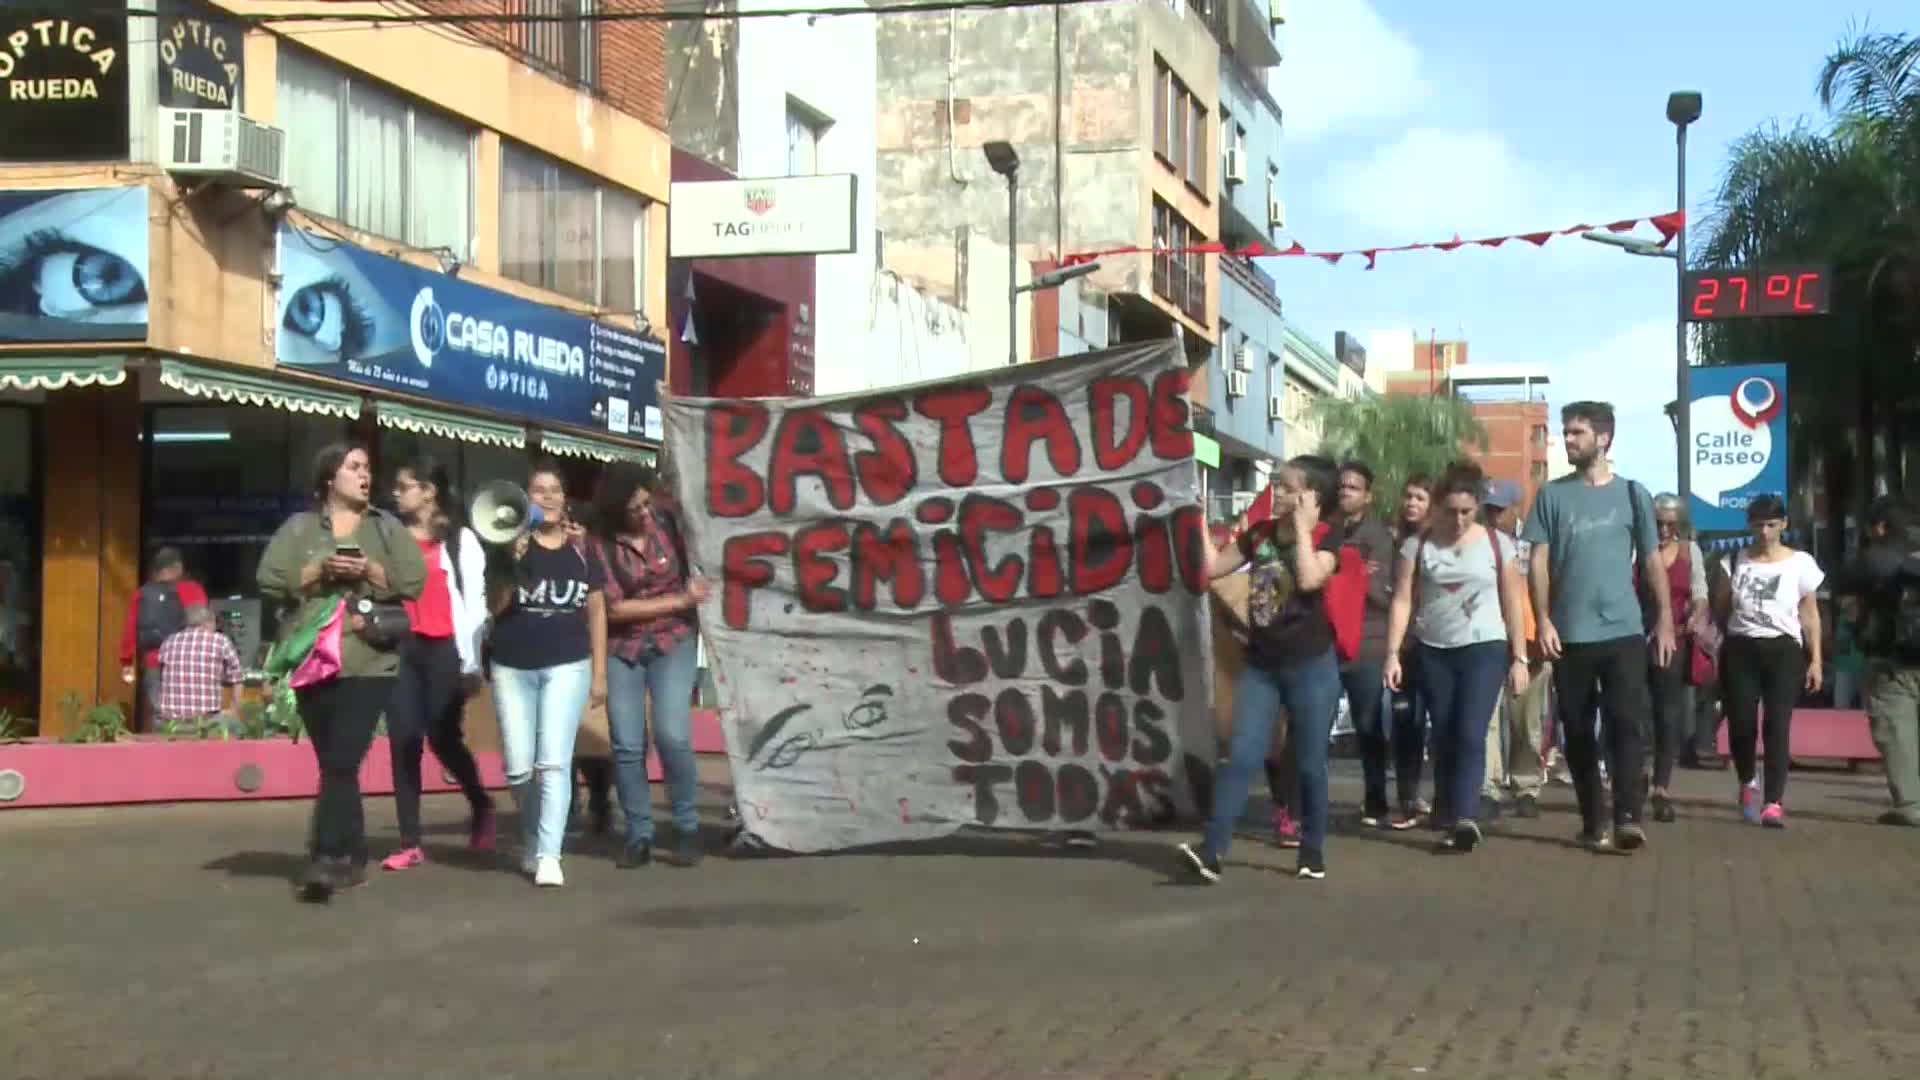 Femicidios: se realizó una marcha reclamando seguridad